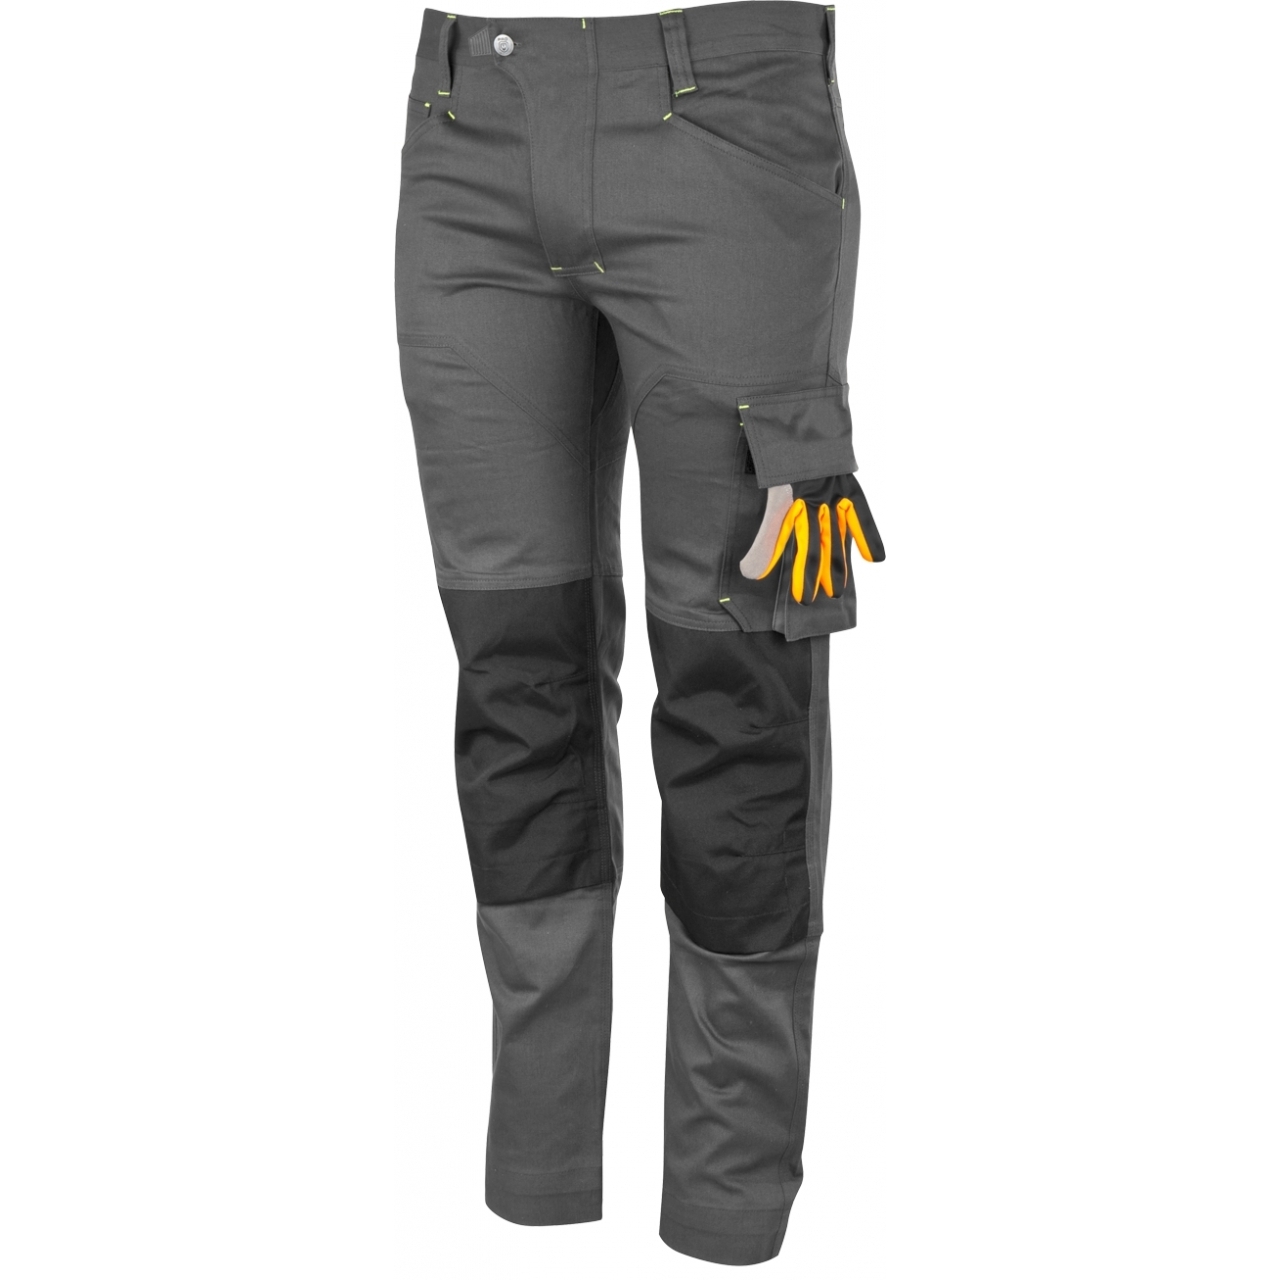 Kalhoty pracovní Bennon Erebos Light - šedé, 62